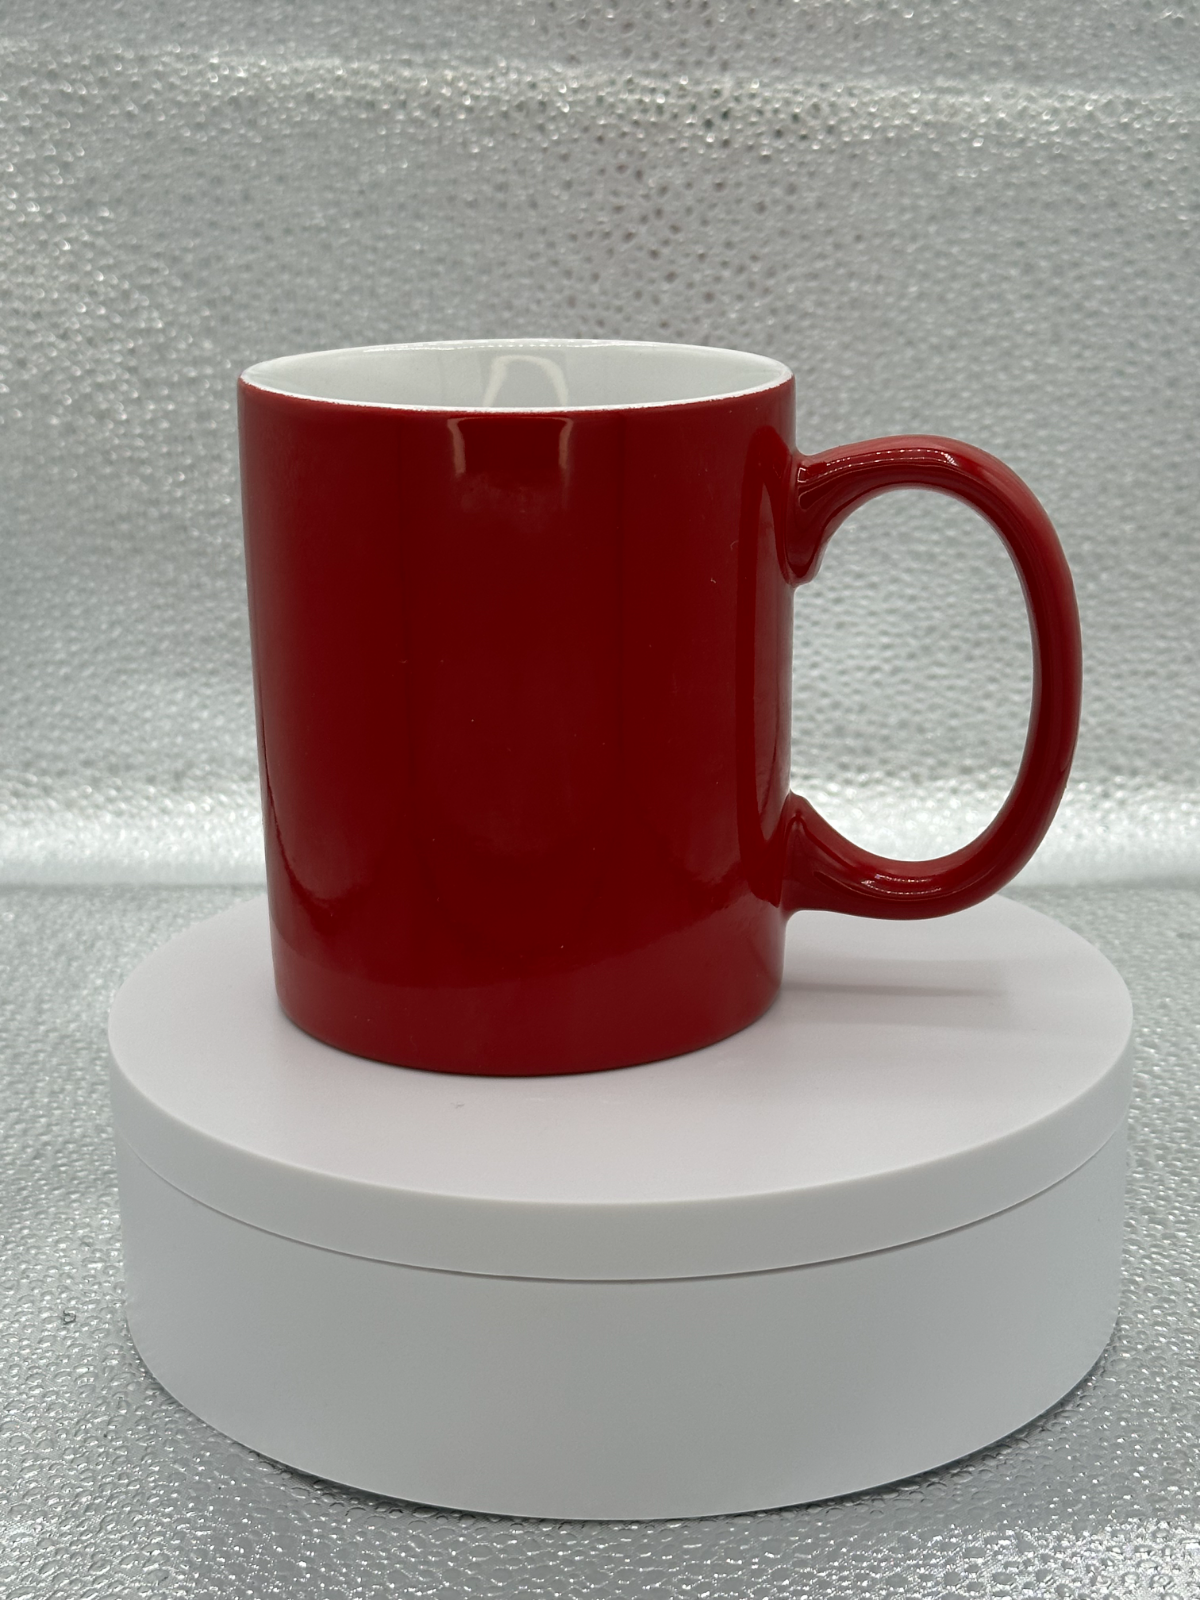 Custom Laser Engraved 12 oz coffee mug red- Dear Santa